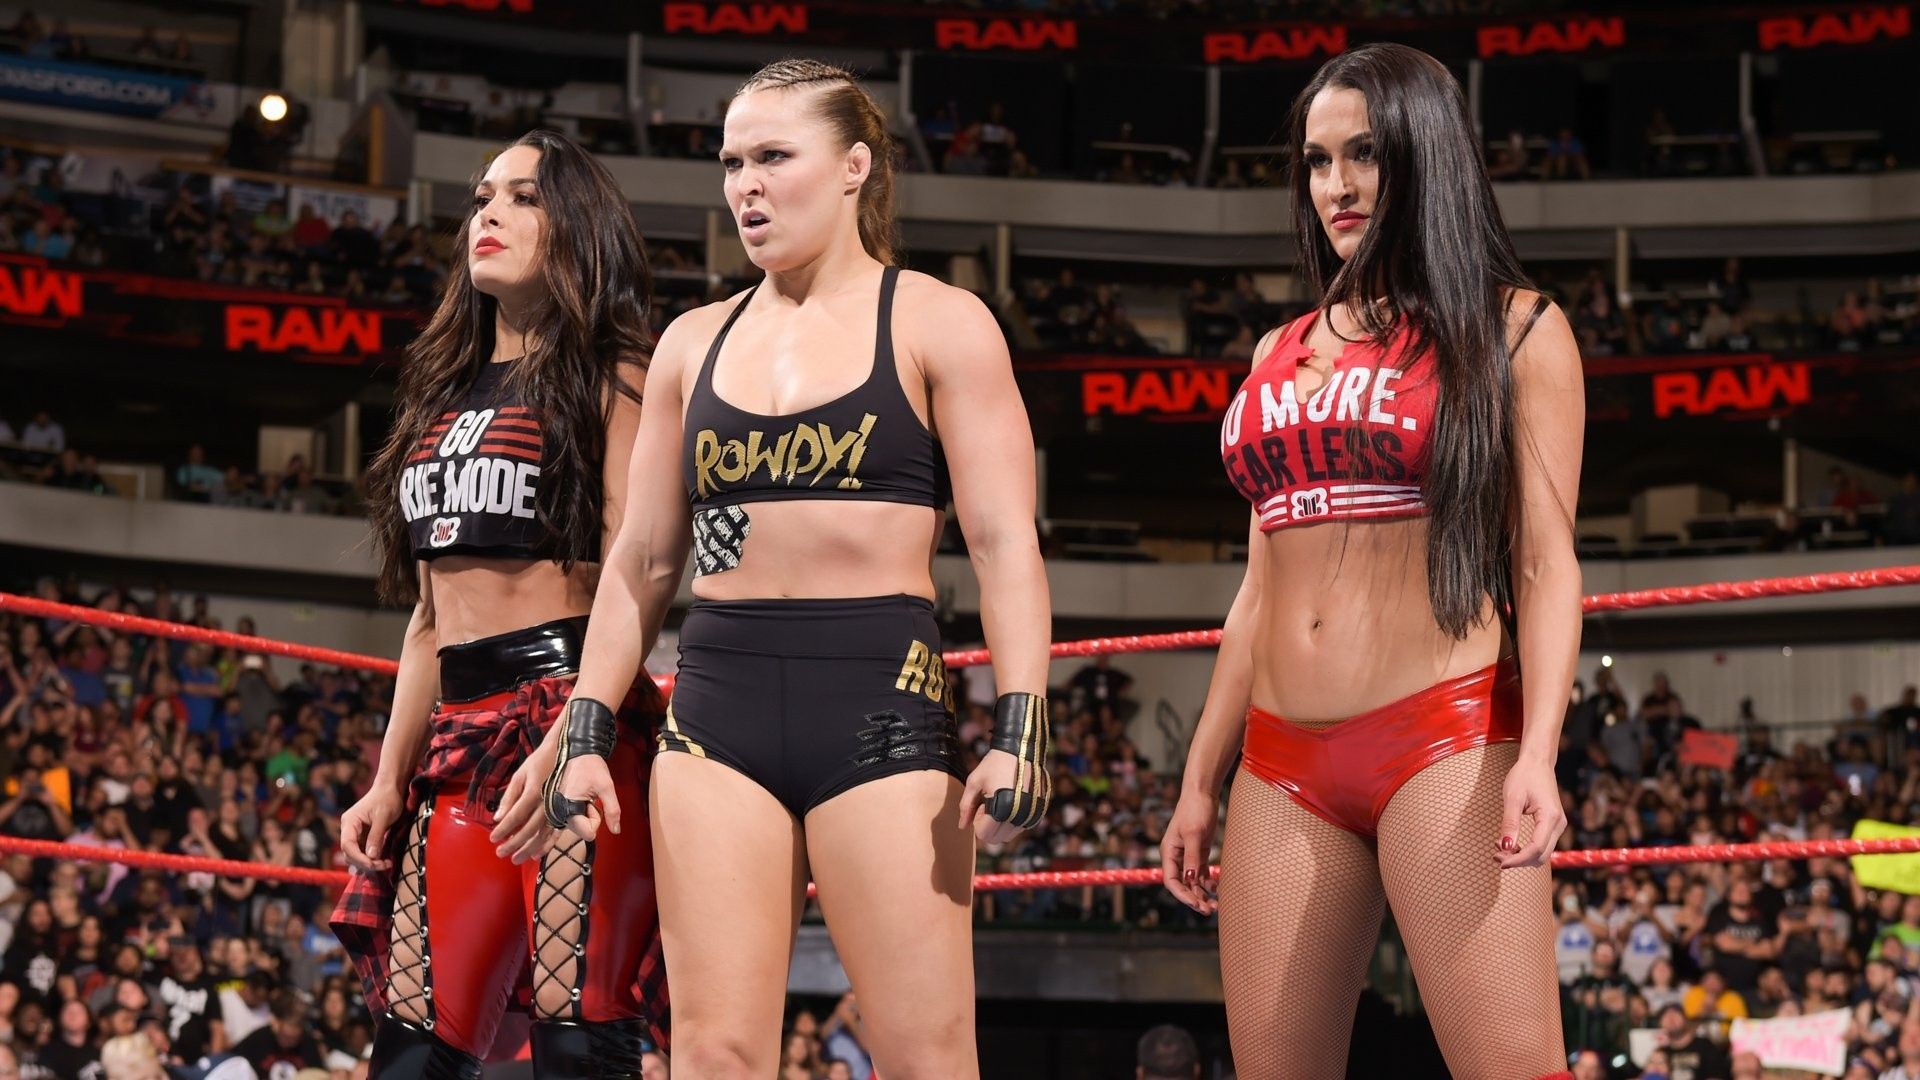 WWE WOMEN'S WRESTLING